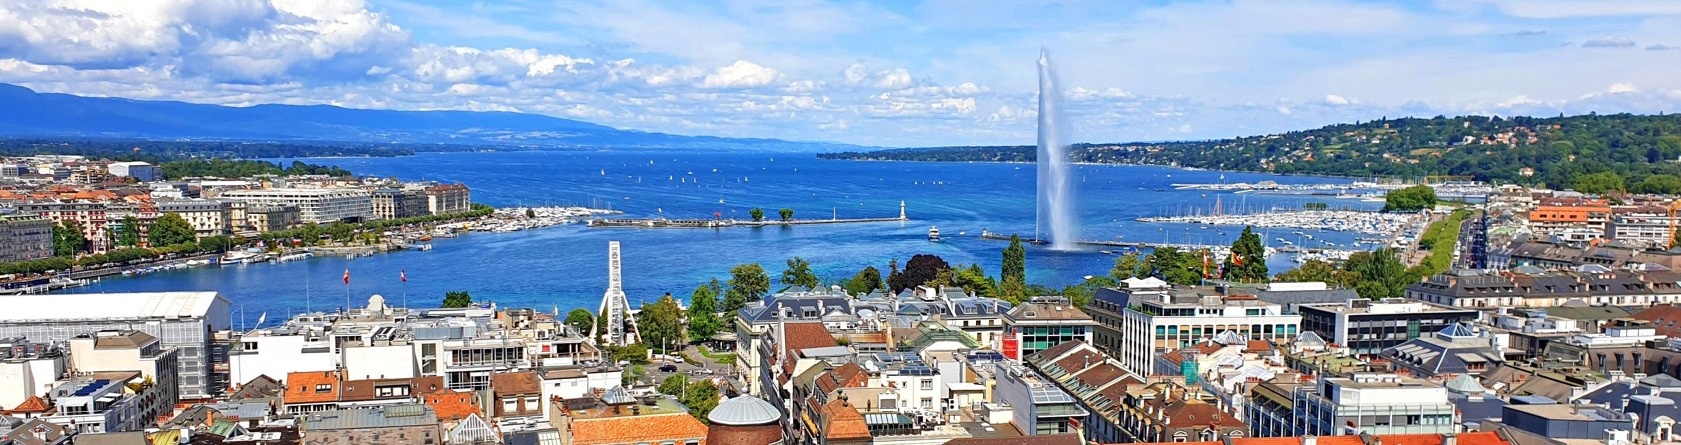 baisse prix immobilier suisse 2022 2023